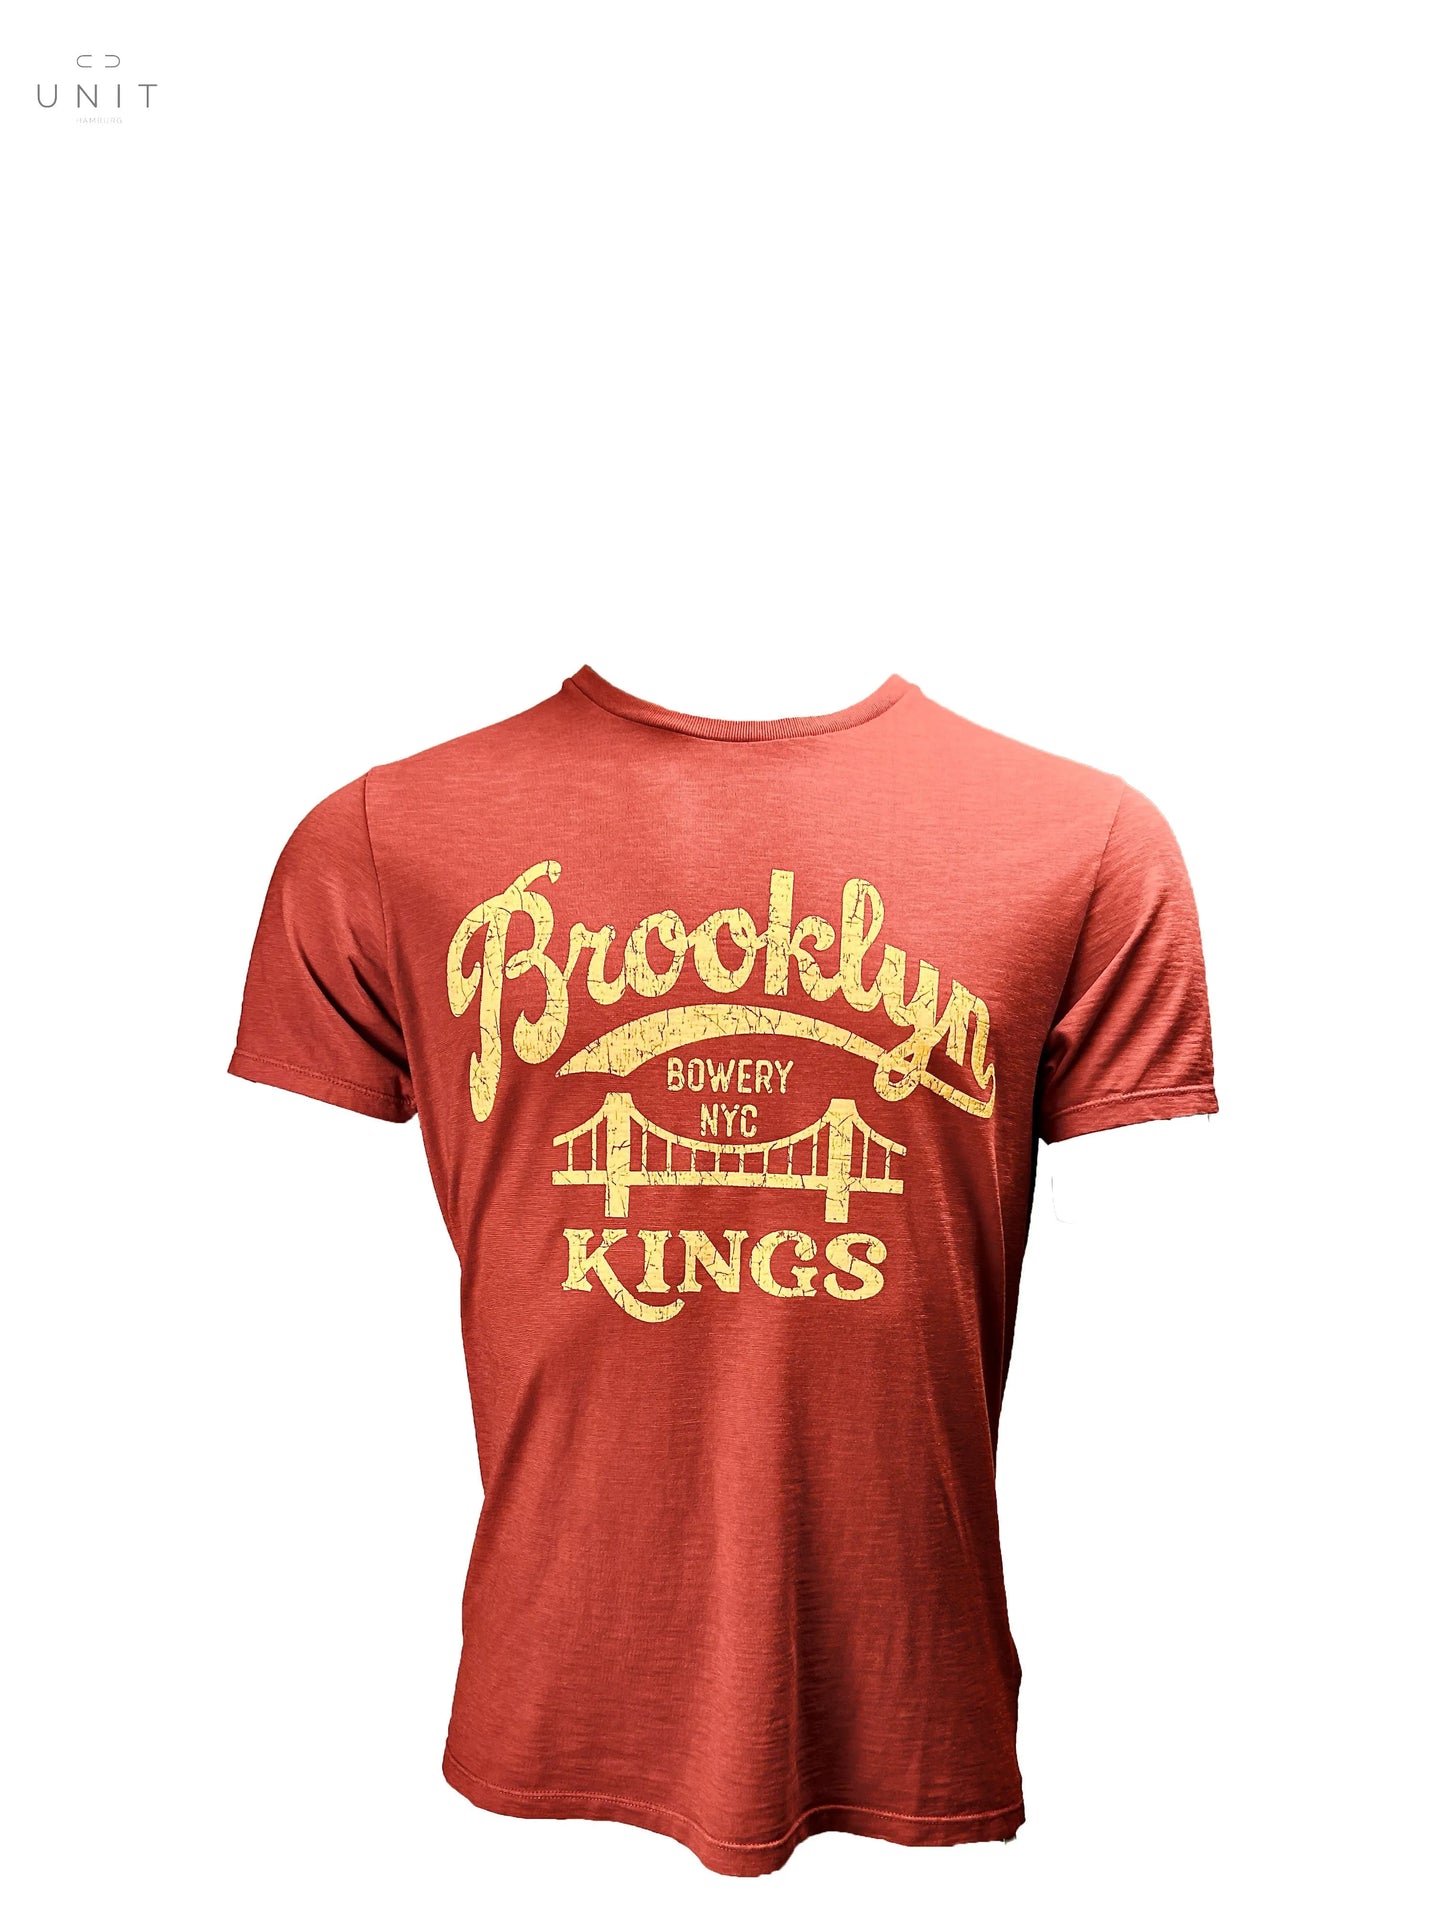 Bowery NYC,T-Shirt,Bowery NYC, Brooklyn Kings Slub Jersey, T-Shirt, bitterorange,UNIT Hamburg